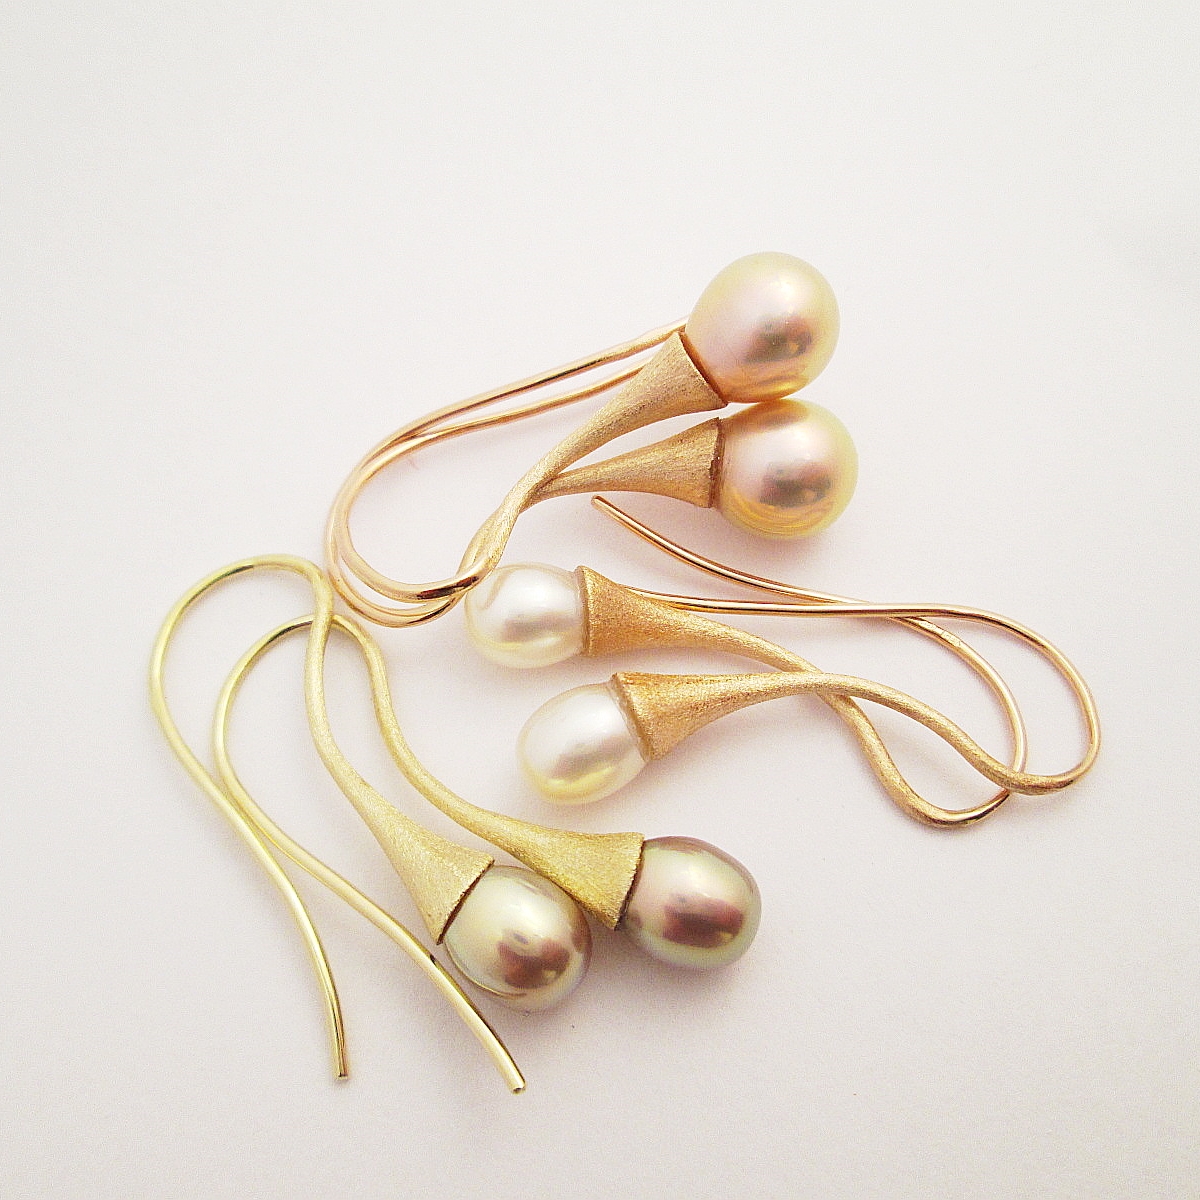  Náušnice s přírodními perlami sorbetových barev o průměru 6,5 mm až 9 mm. Zlato 585/1000. Délka náušnic 3,5 cm.  Cena od 7900,-Kč. 